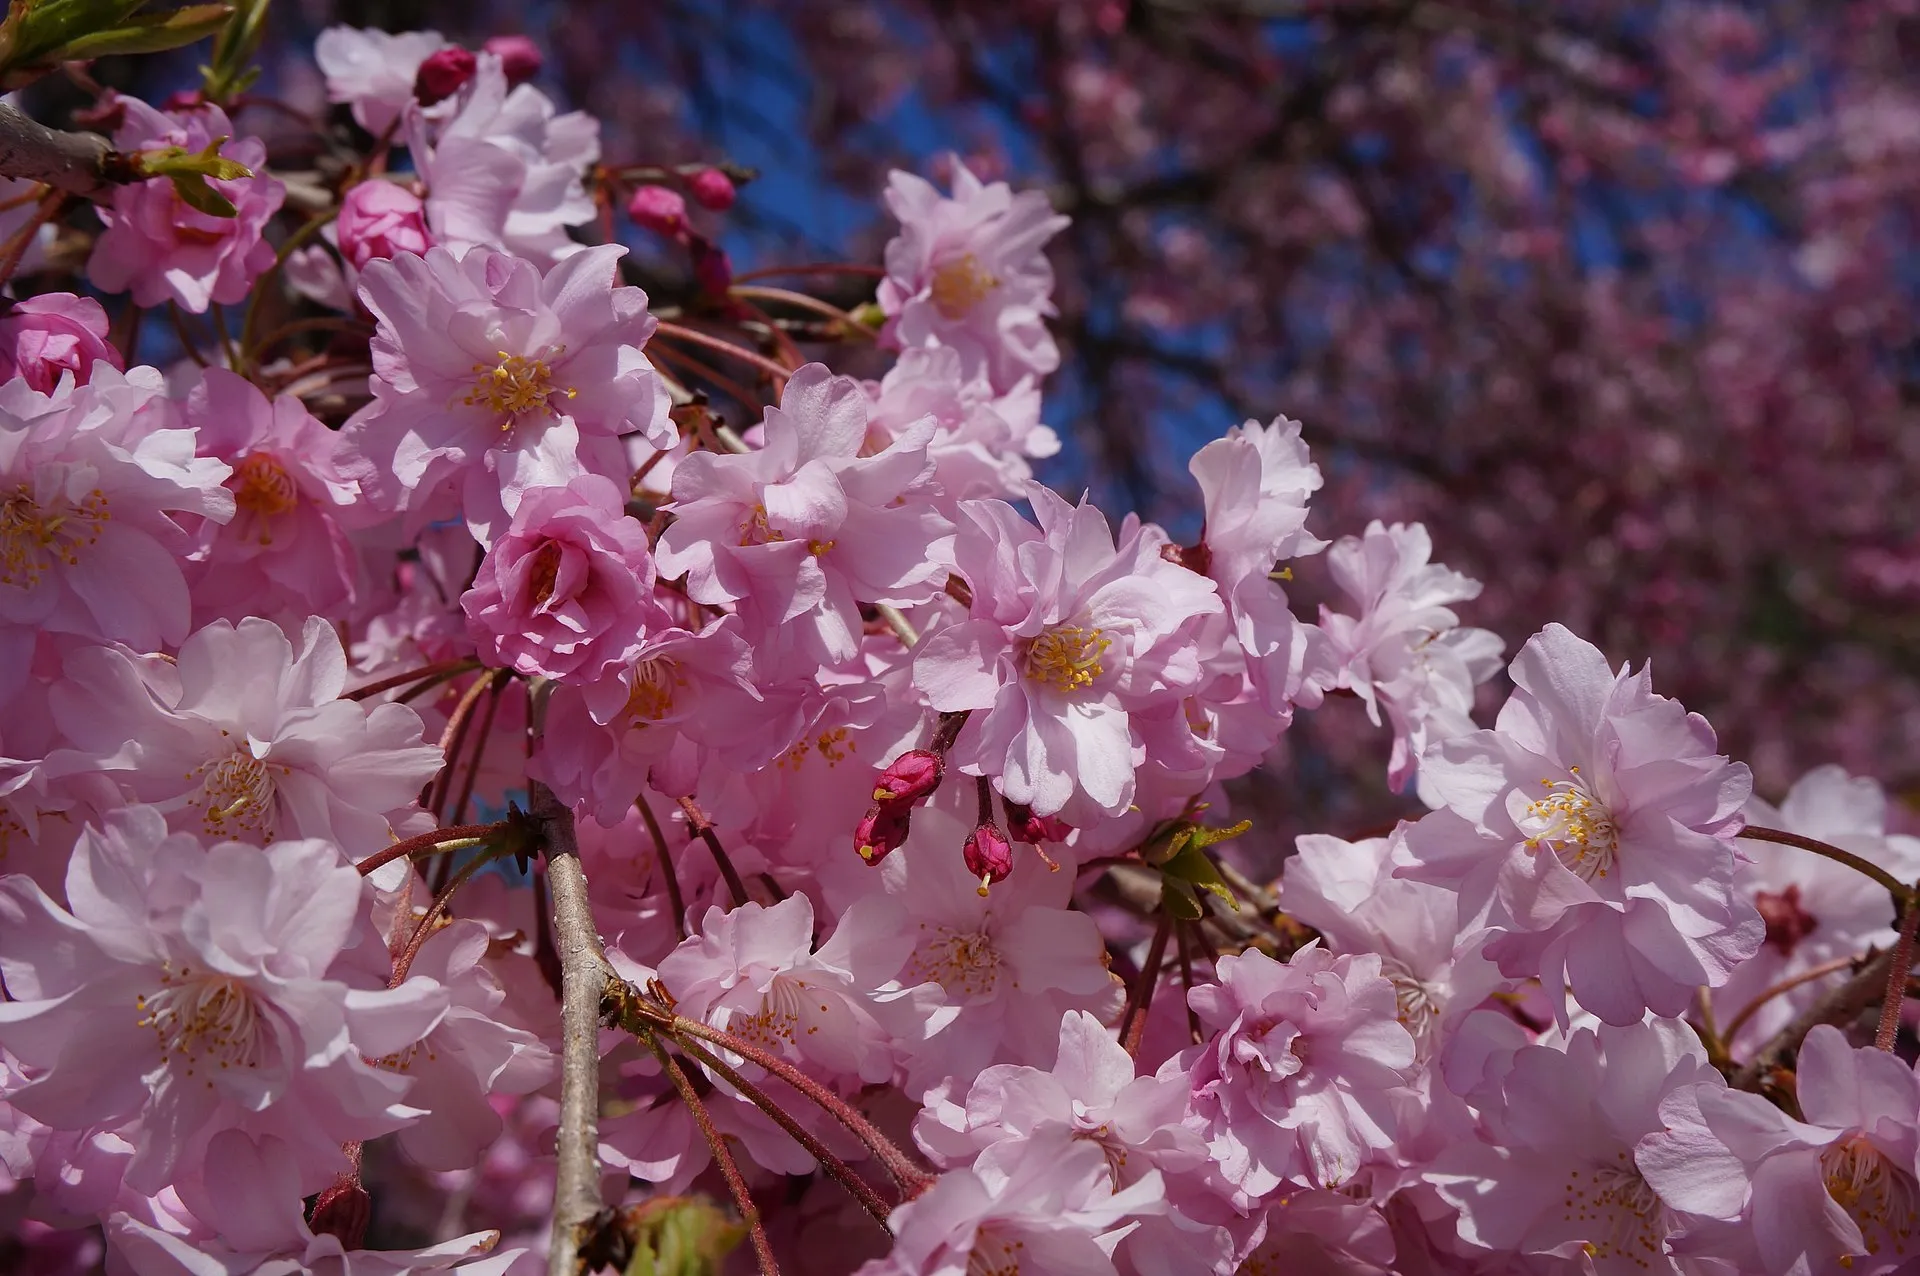 八重桜 5月9日の誕生花 通販 愛香園 家庭菜園 造園 観葉植物の通販 造園 樹木 植物のスペシャリスト集団